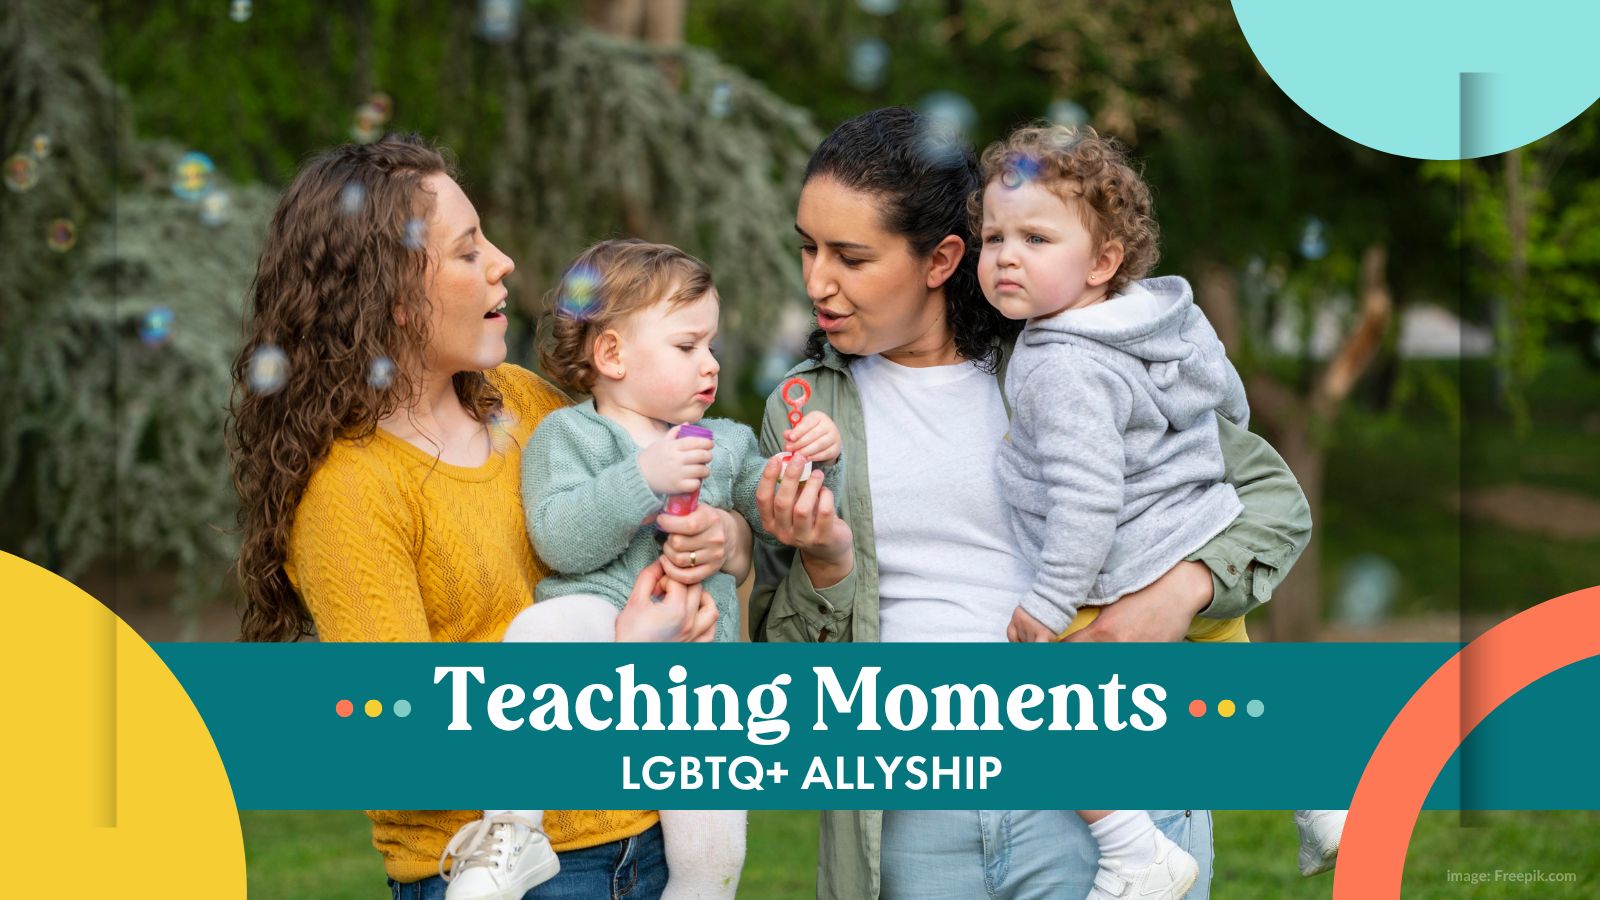 LGBTQ+ Allyship – Teaching Moments